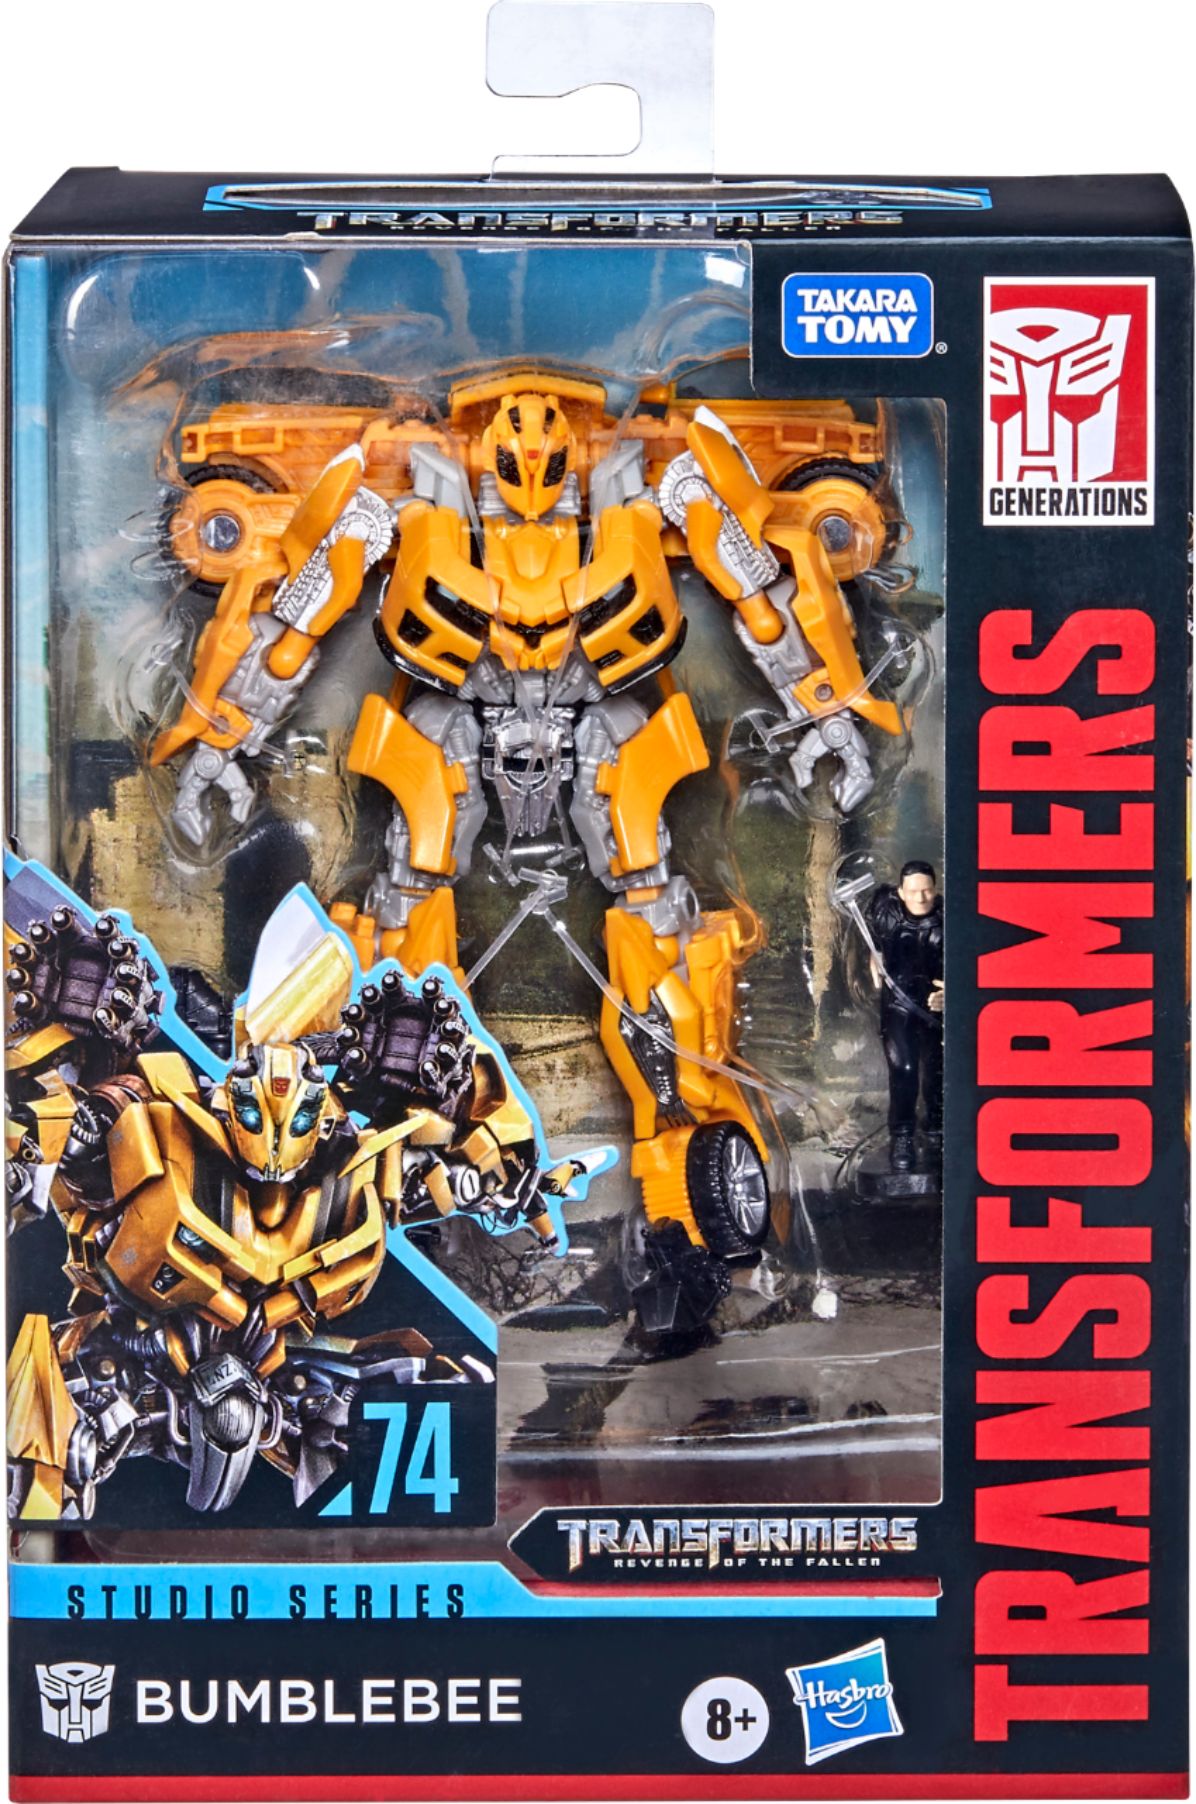 Transformers Studio Series 74 Deluxe Class Revenge of the Fallen